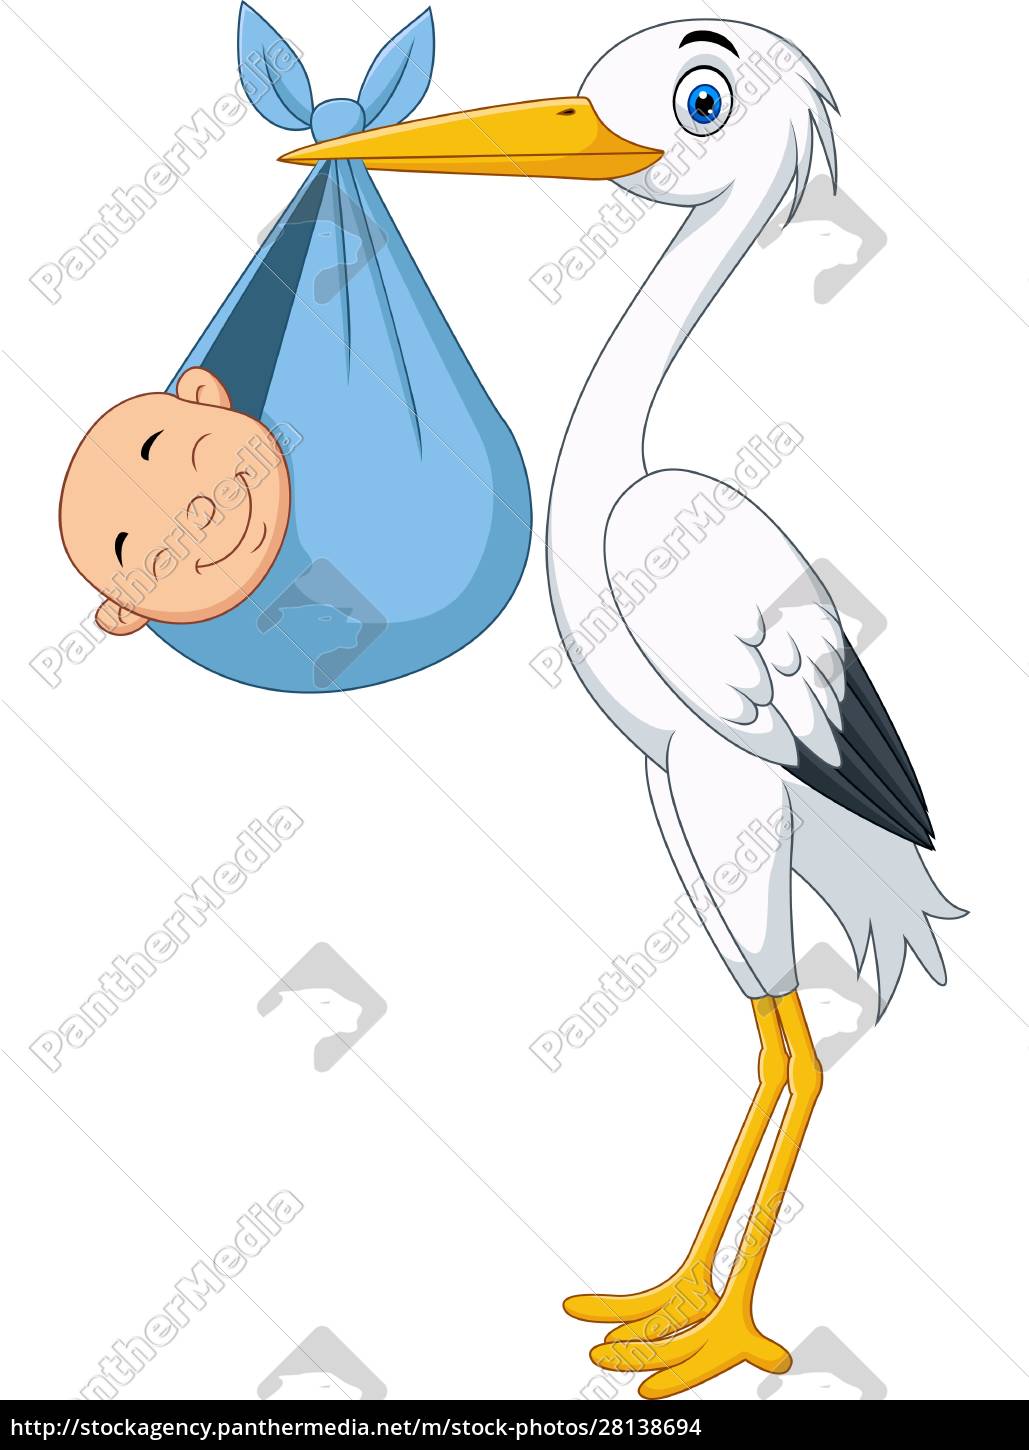 Desenho de desenho animado de um bebê recém-nascido